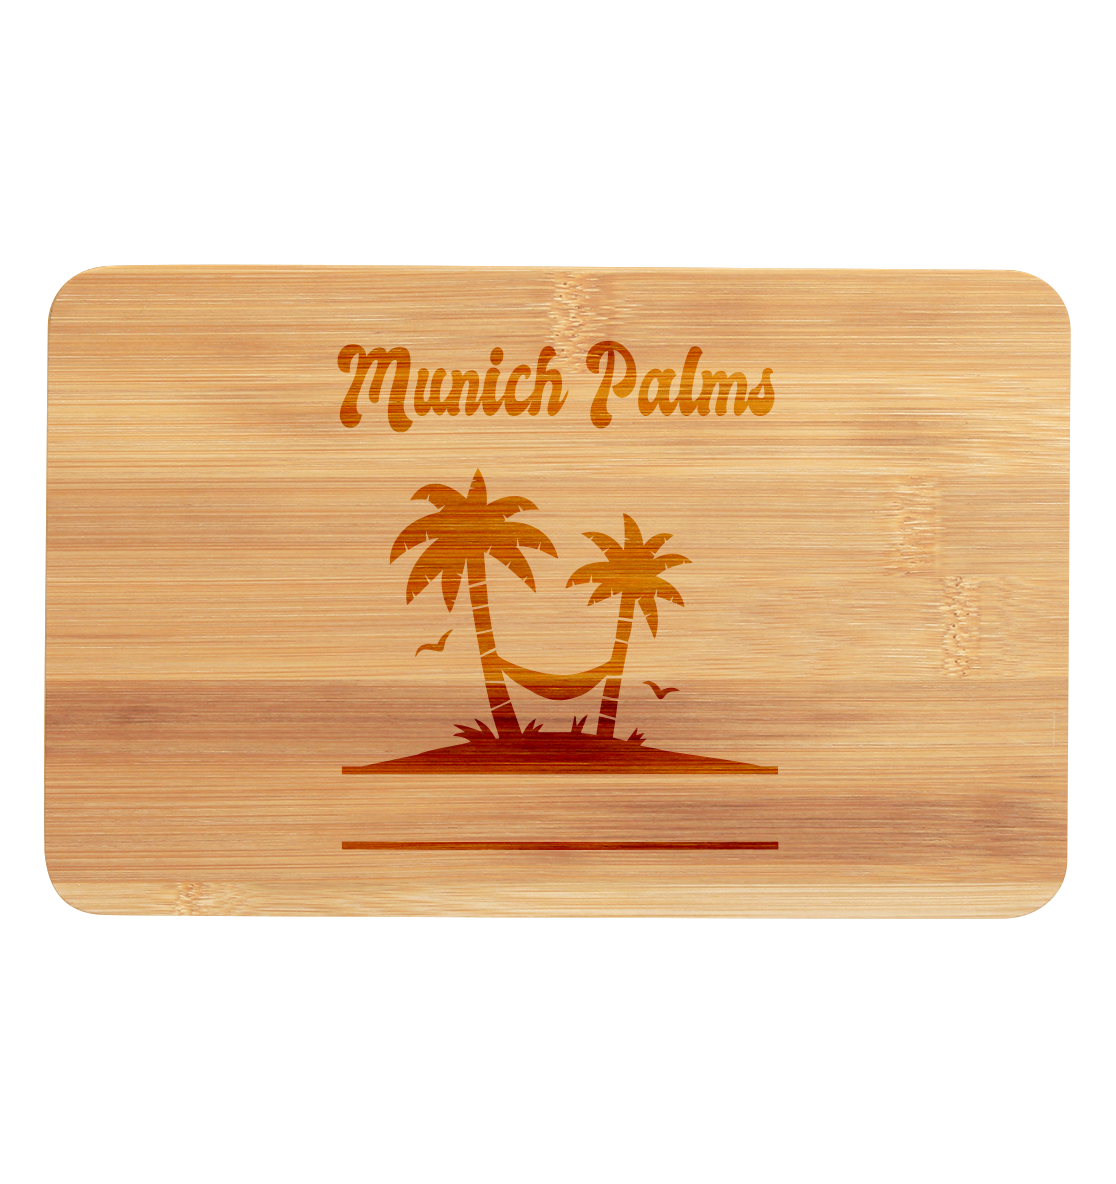 Munich Palms Design - Premium bamboo boards